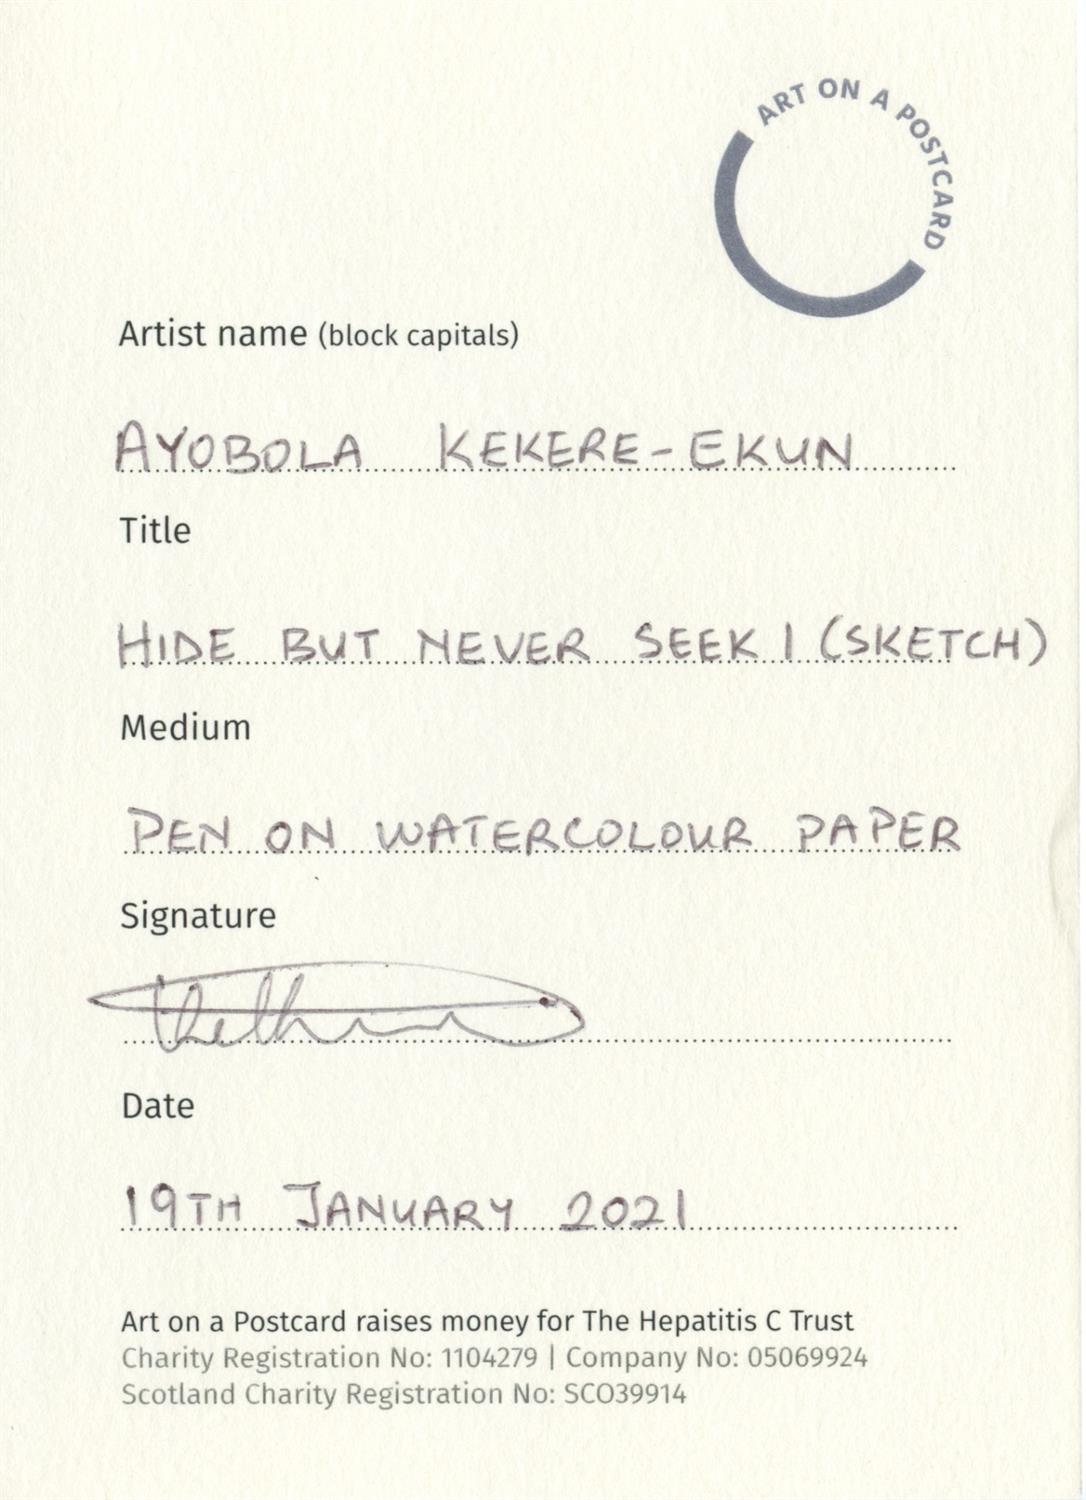 Ayobola Kekere-Ekun, Hide but Never Seek (Sketch), 2021 - Image 2 of 3